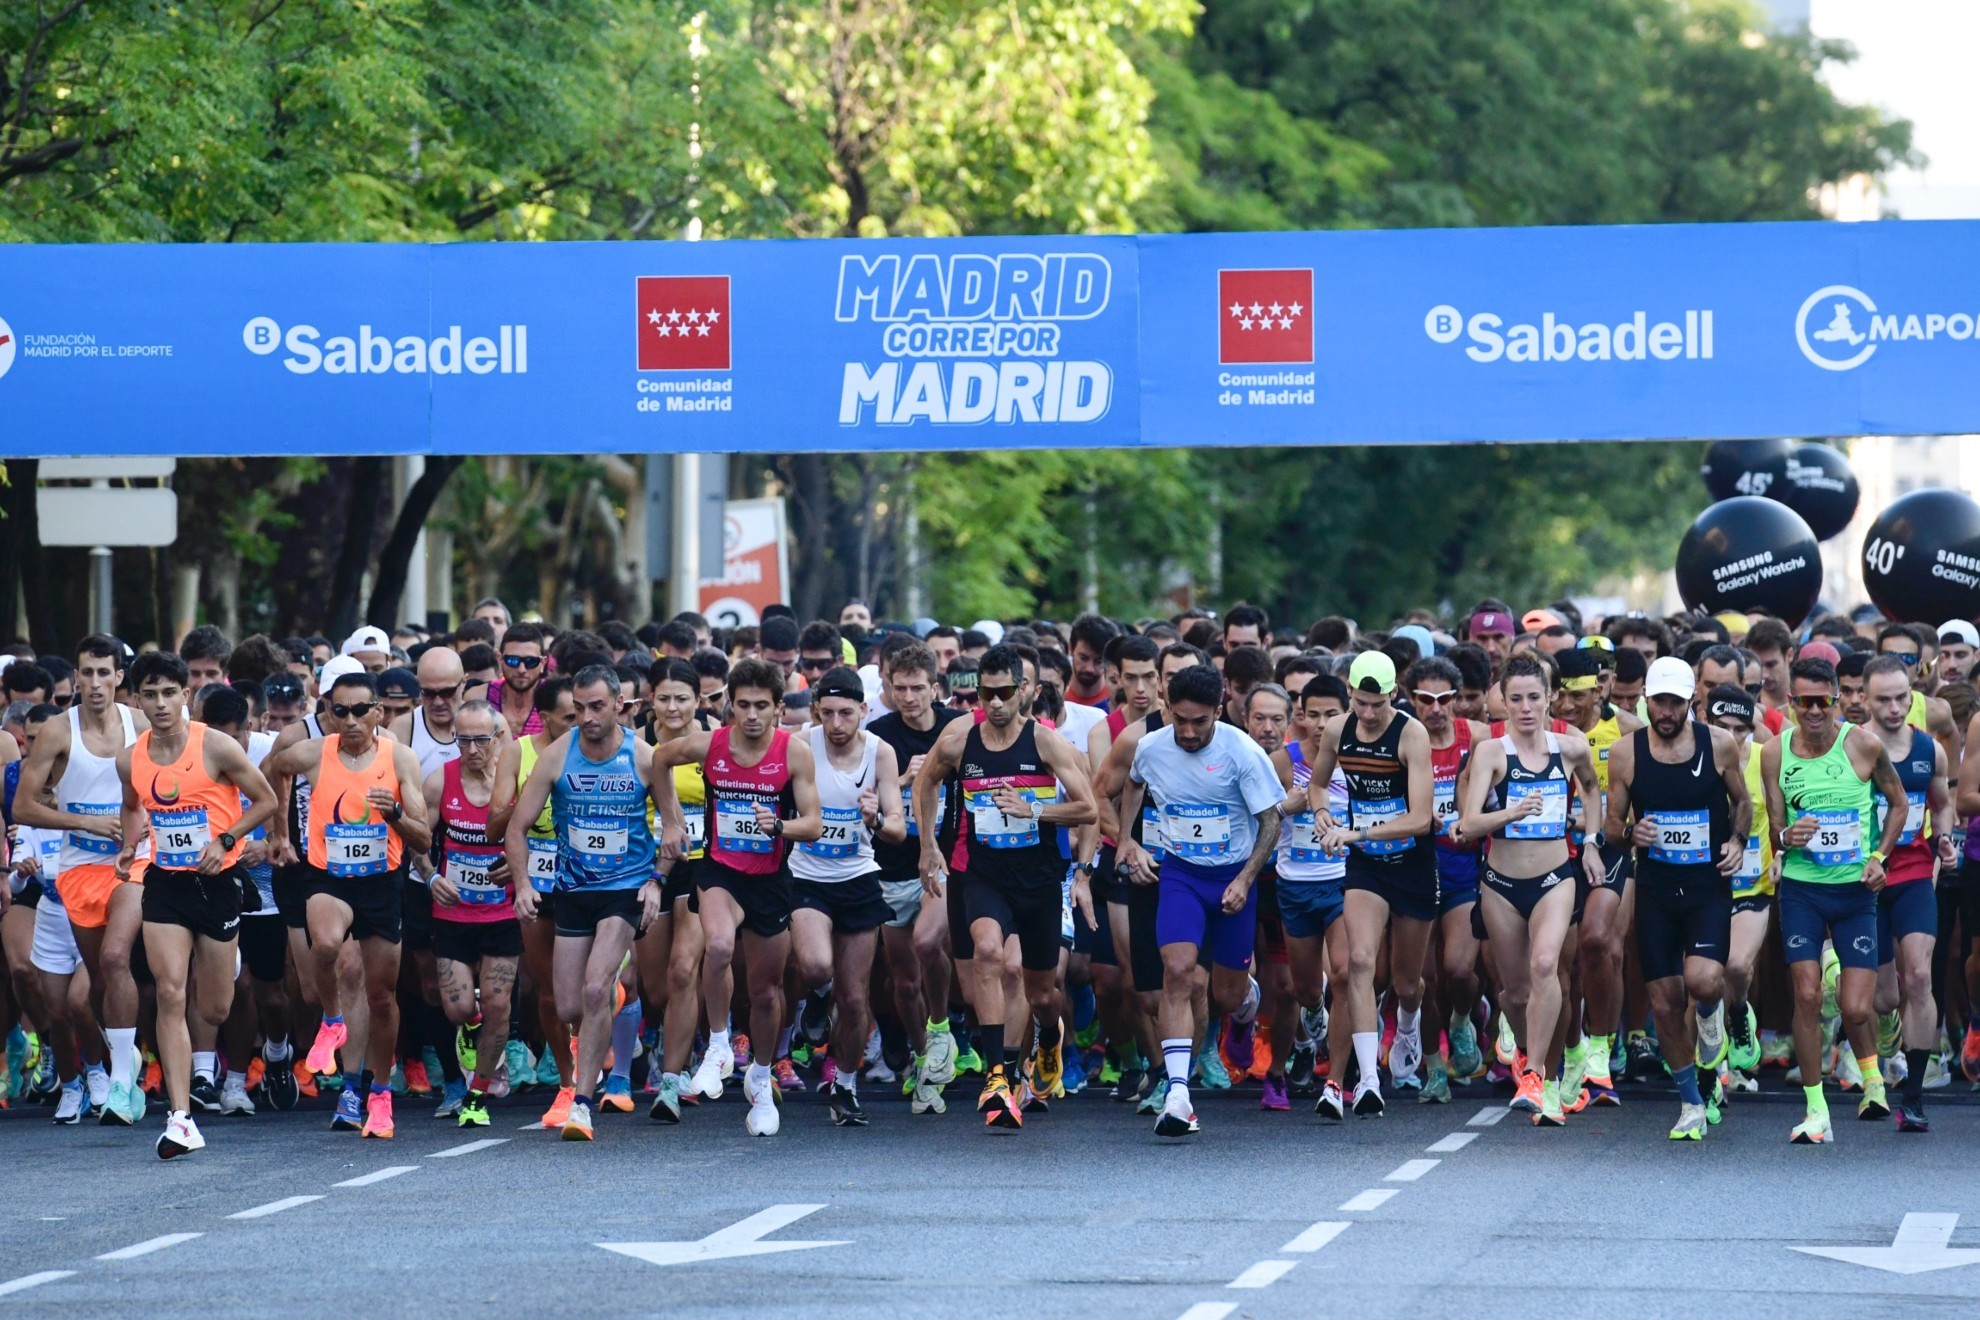 Cientos de corredores toman la salida de la carrera popular "Madrid corre por Madrid", organizada por Mapoma.